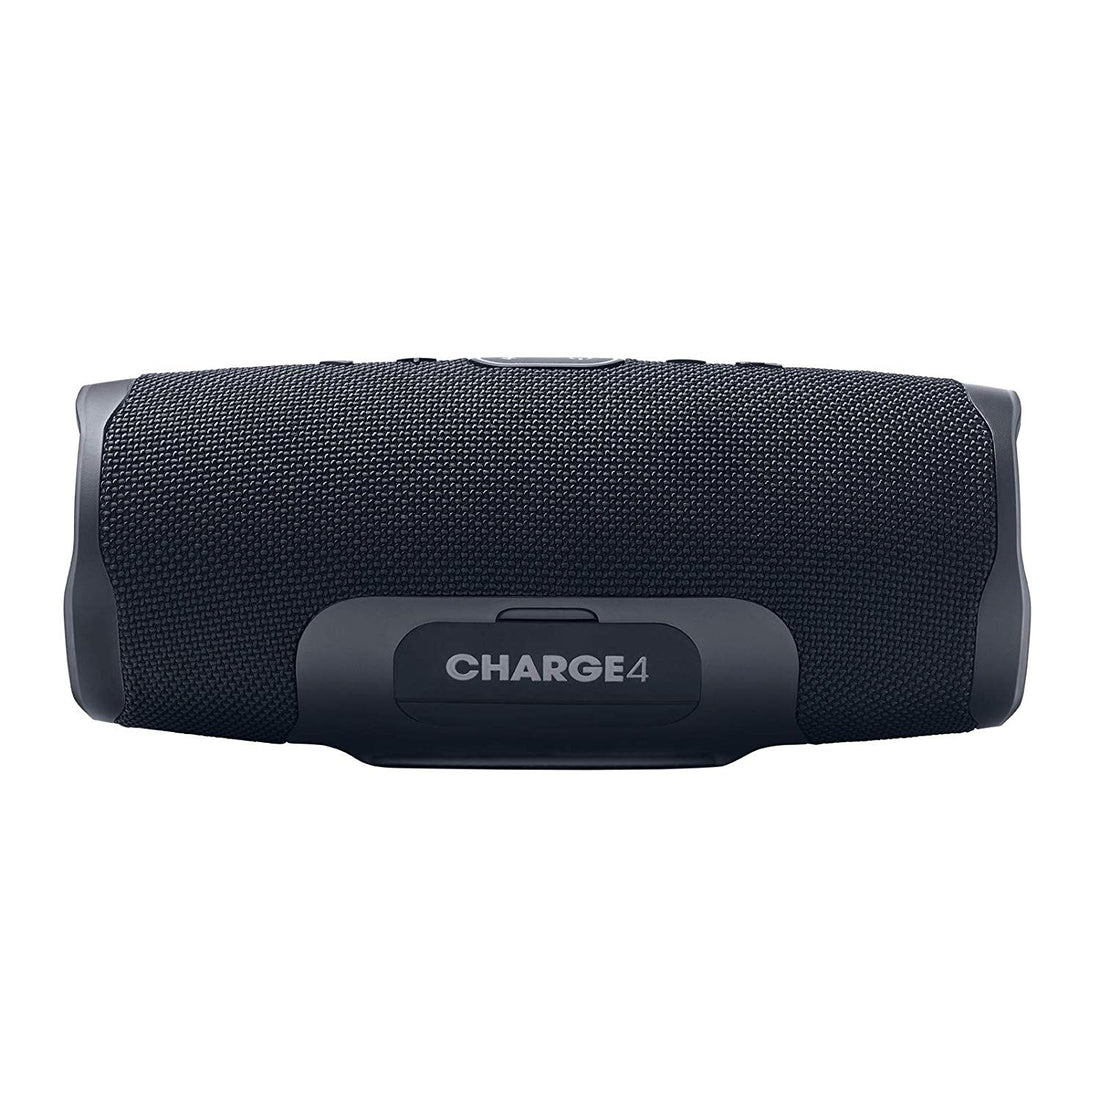 JBL Charge 4 Waterproof Wireless Portable Bluetooth Speaker - Black (Certified Refurbished)